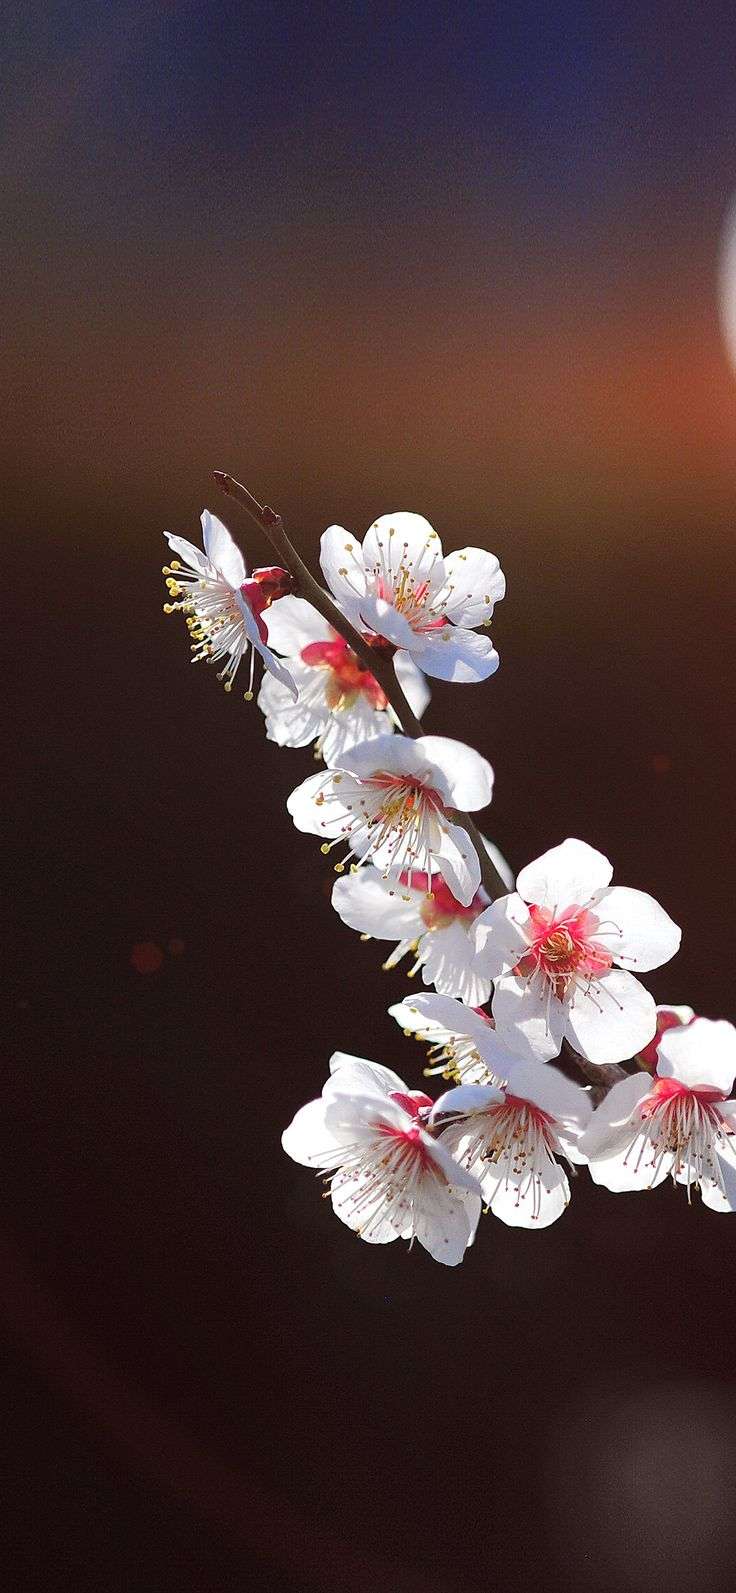 iPhone X Wallpaper Flower